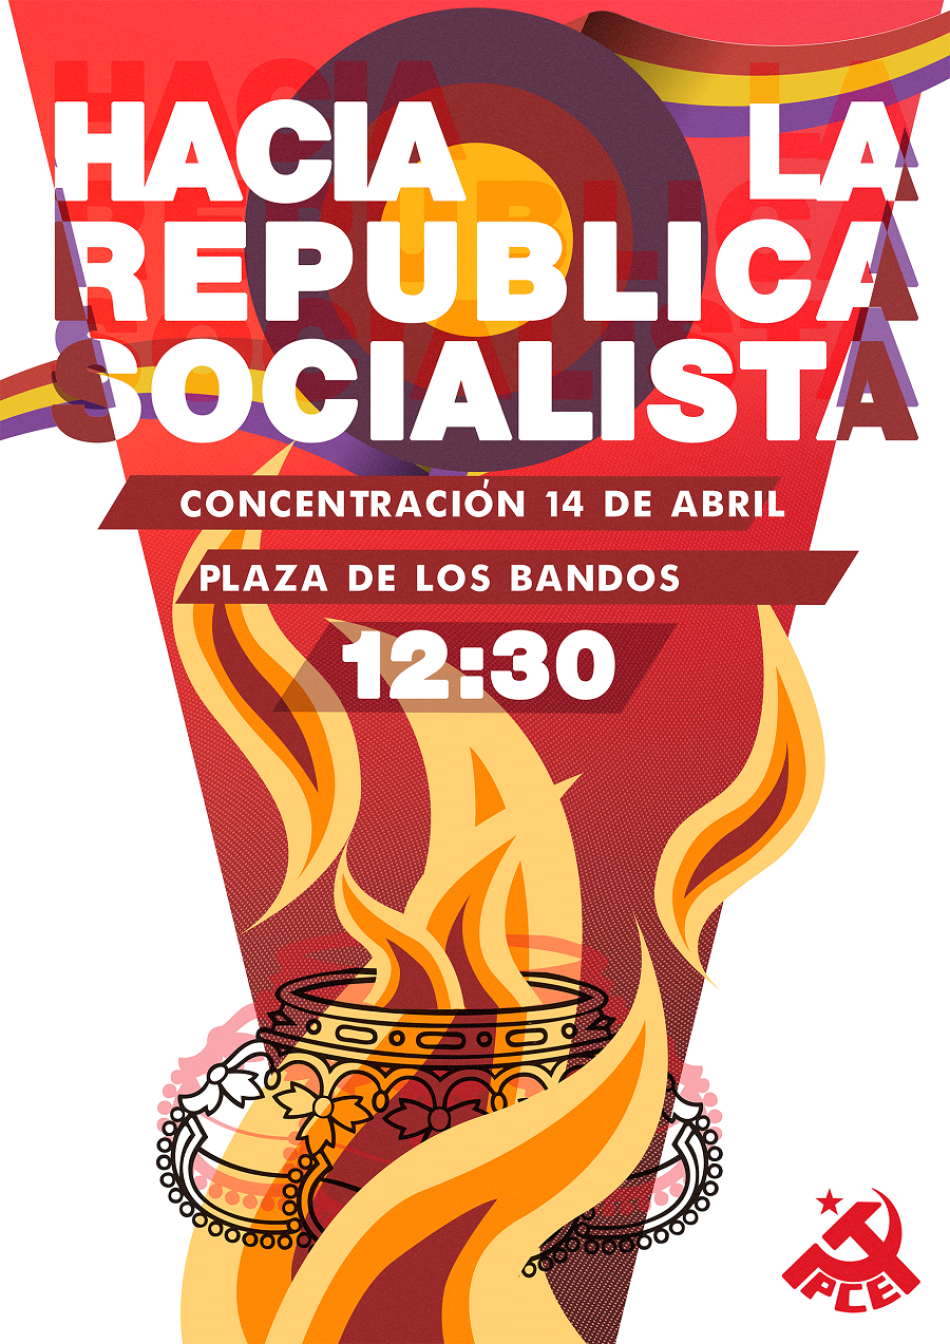 El PCE de Salamanca organiza una nueva concentración republicana